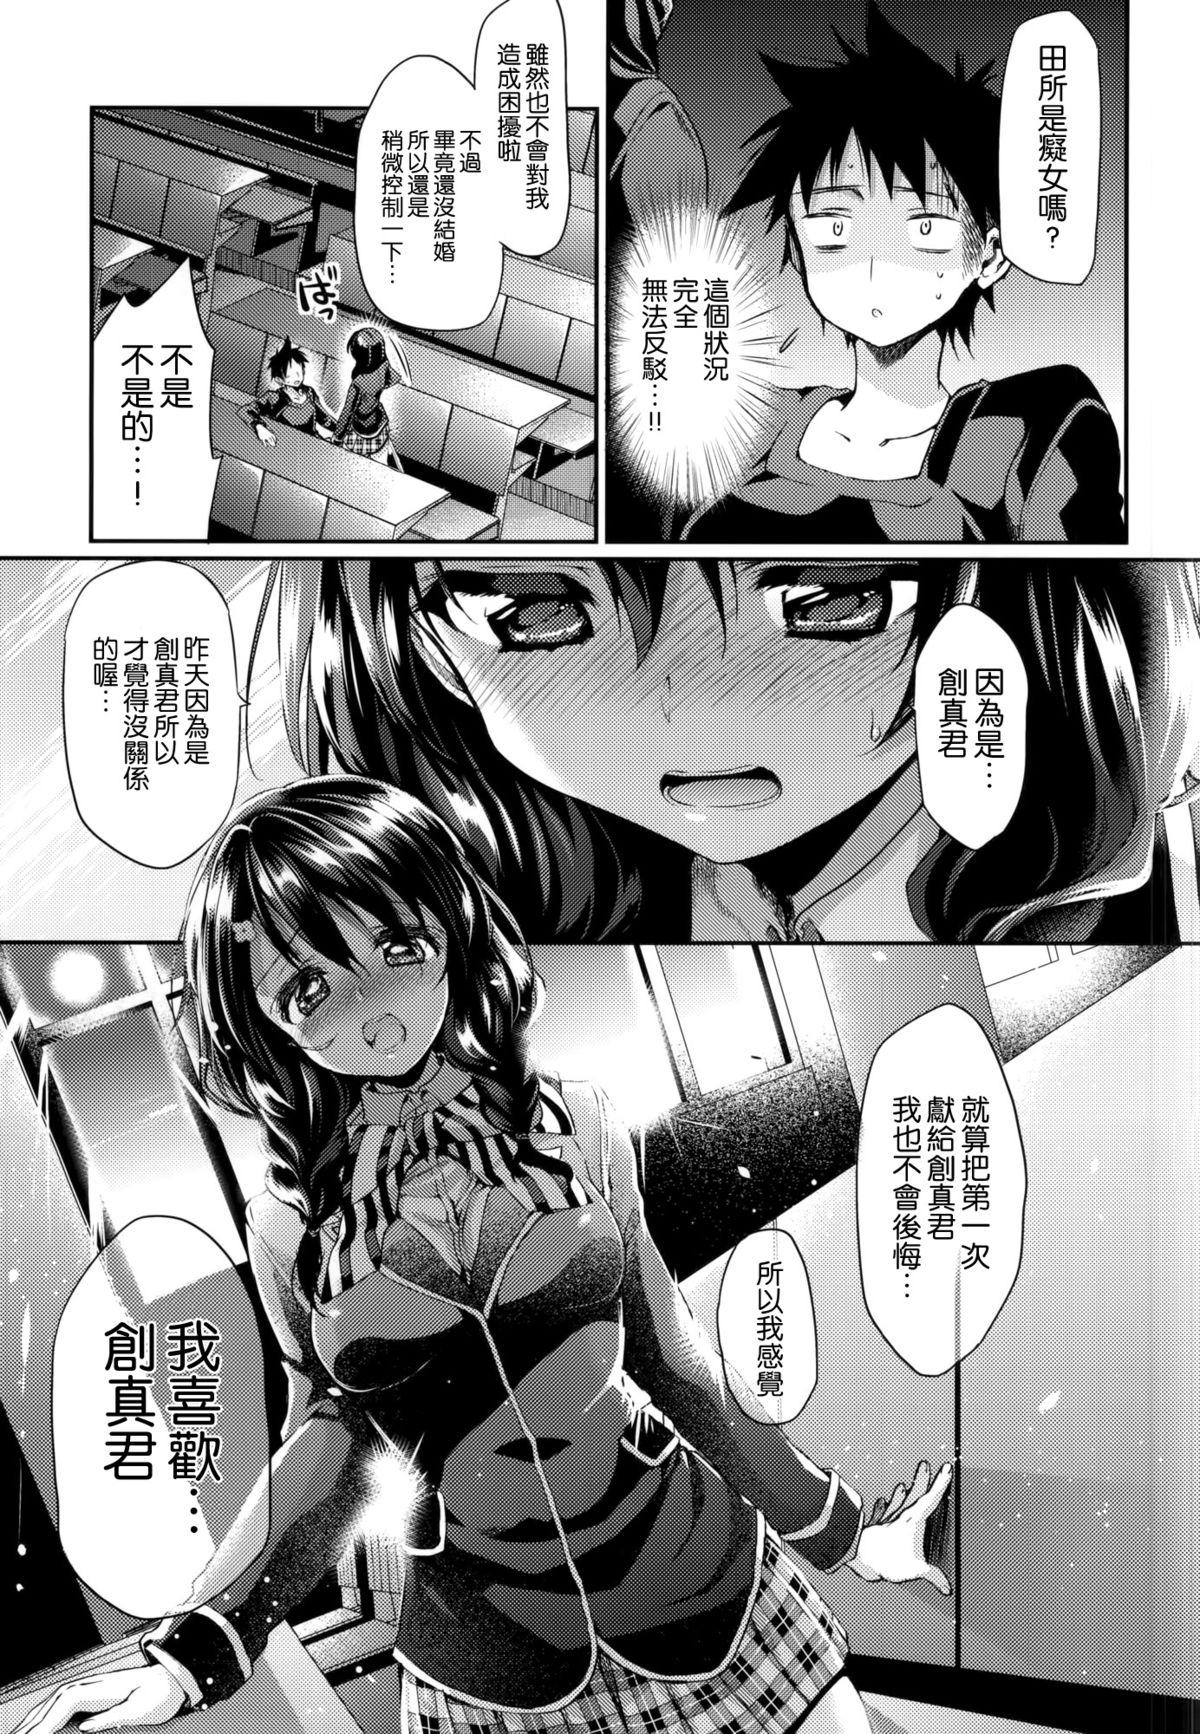 Tits Houkago Hospitality 2 - Shokugeki no soma Teens - Page 9